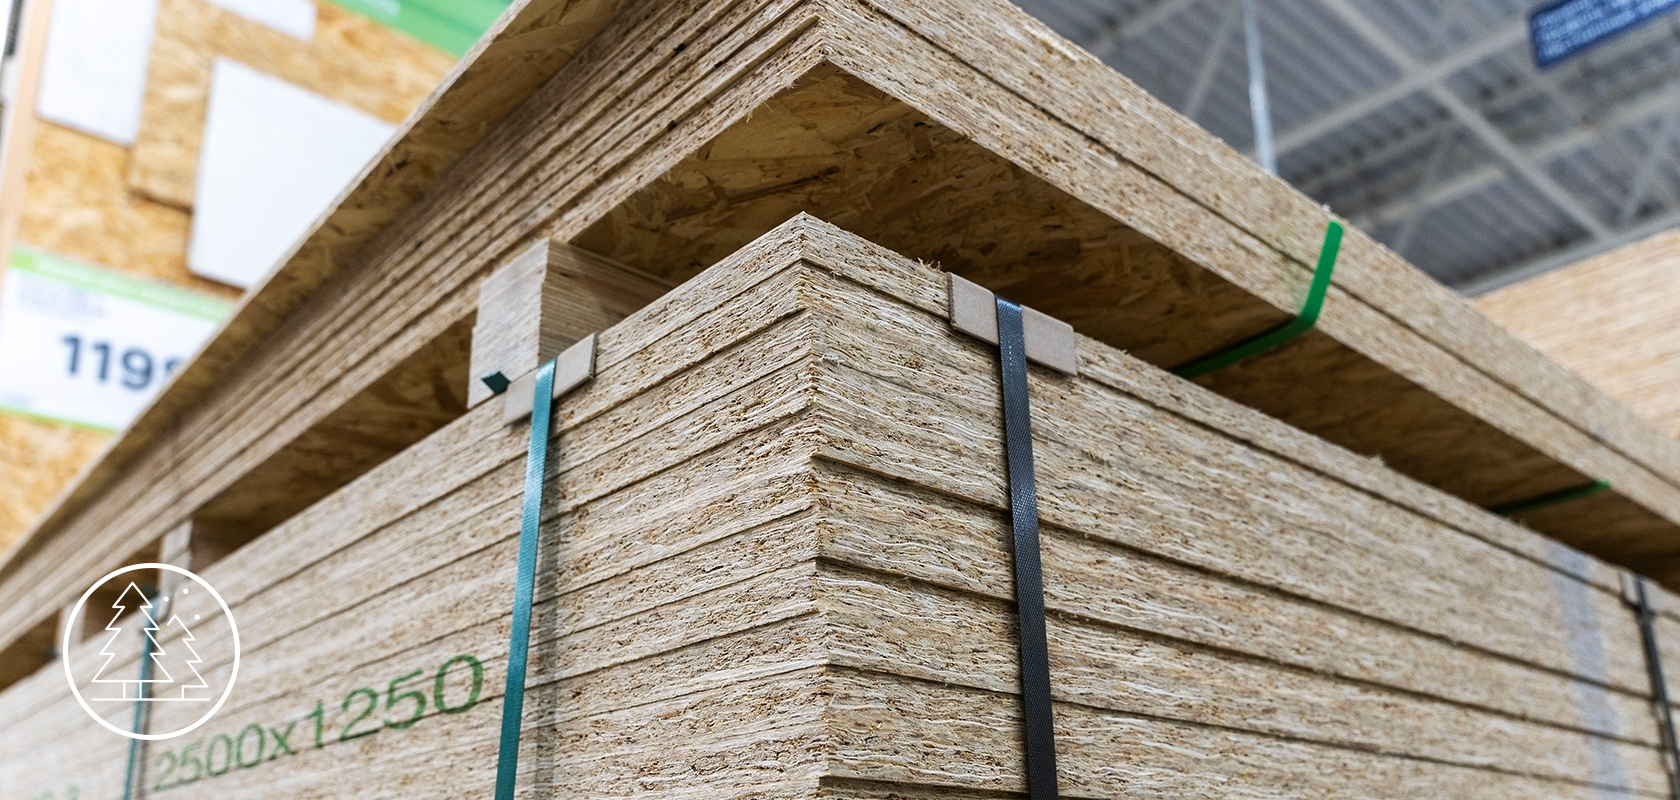 Pannelli di truciolato orientato (OSB) impilati in un magazzino, mostrando la loro costruzione a strati e dimensioni per progetti di costruzione e miglioramento della casa.